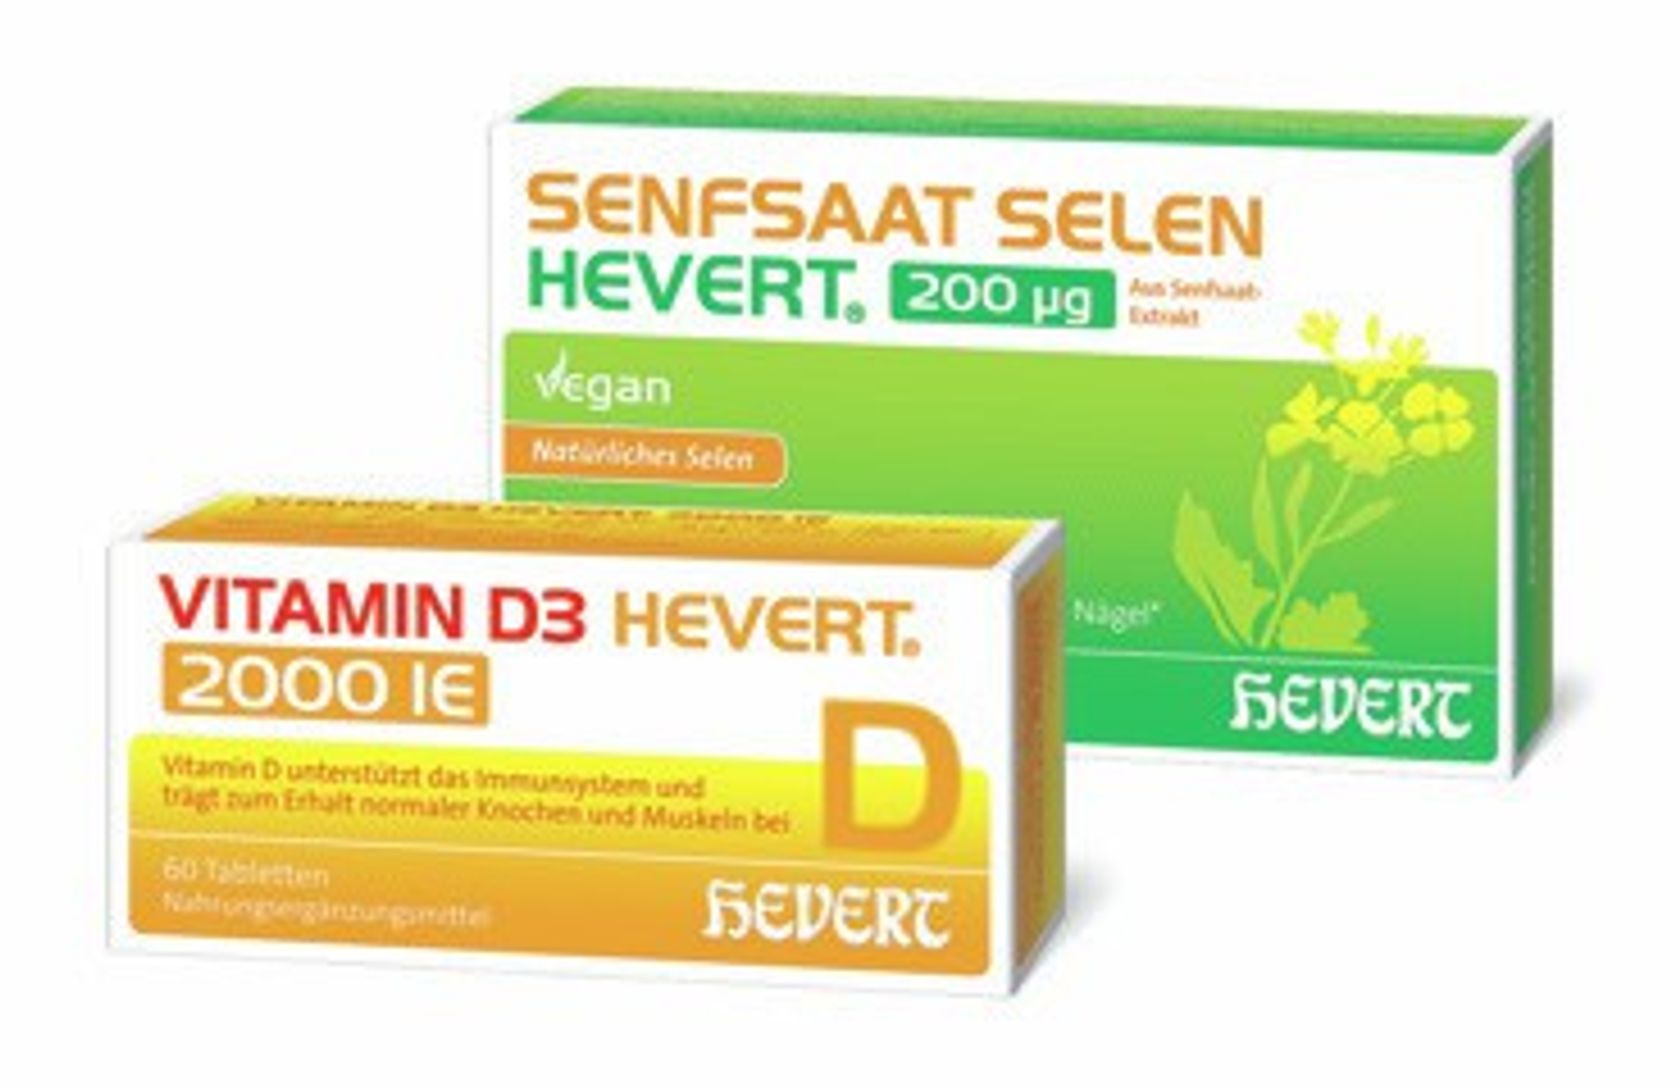 Foto der Packungen von Hevert Senfsaat Selen und Hevert Vitamin D3.